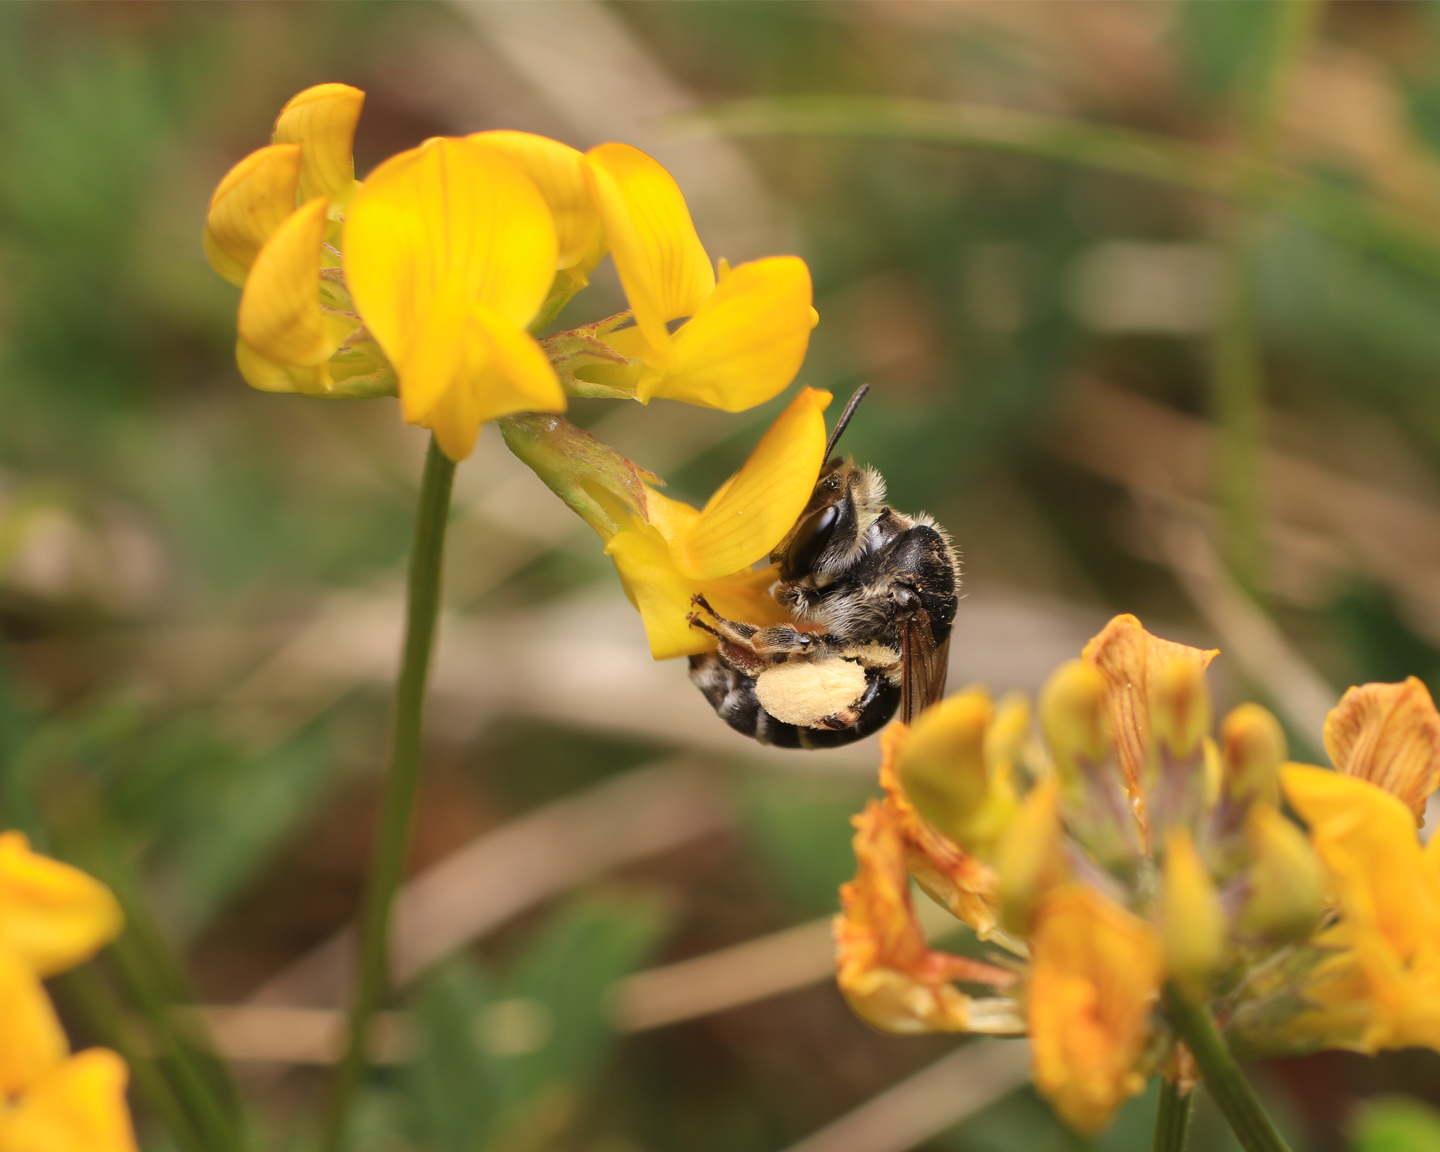 Les abeilles sauvages du genre Andrena (photo 2 : Andrena ovatula) ou Osmia (photo 3 : Osmia labialis) ont une meilleure efficacité de pollinisation que l'abeille domestique. Le pollen se fixe entre autres sur les scopas, qui sont des poils situés sous les hanches pour les andrènes et sous l'abdomen pour les osmies. Photo ©Yvan Brugerolles